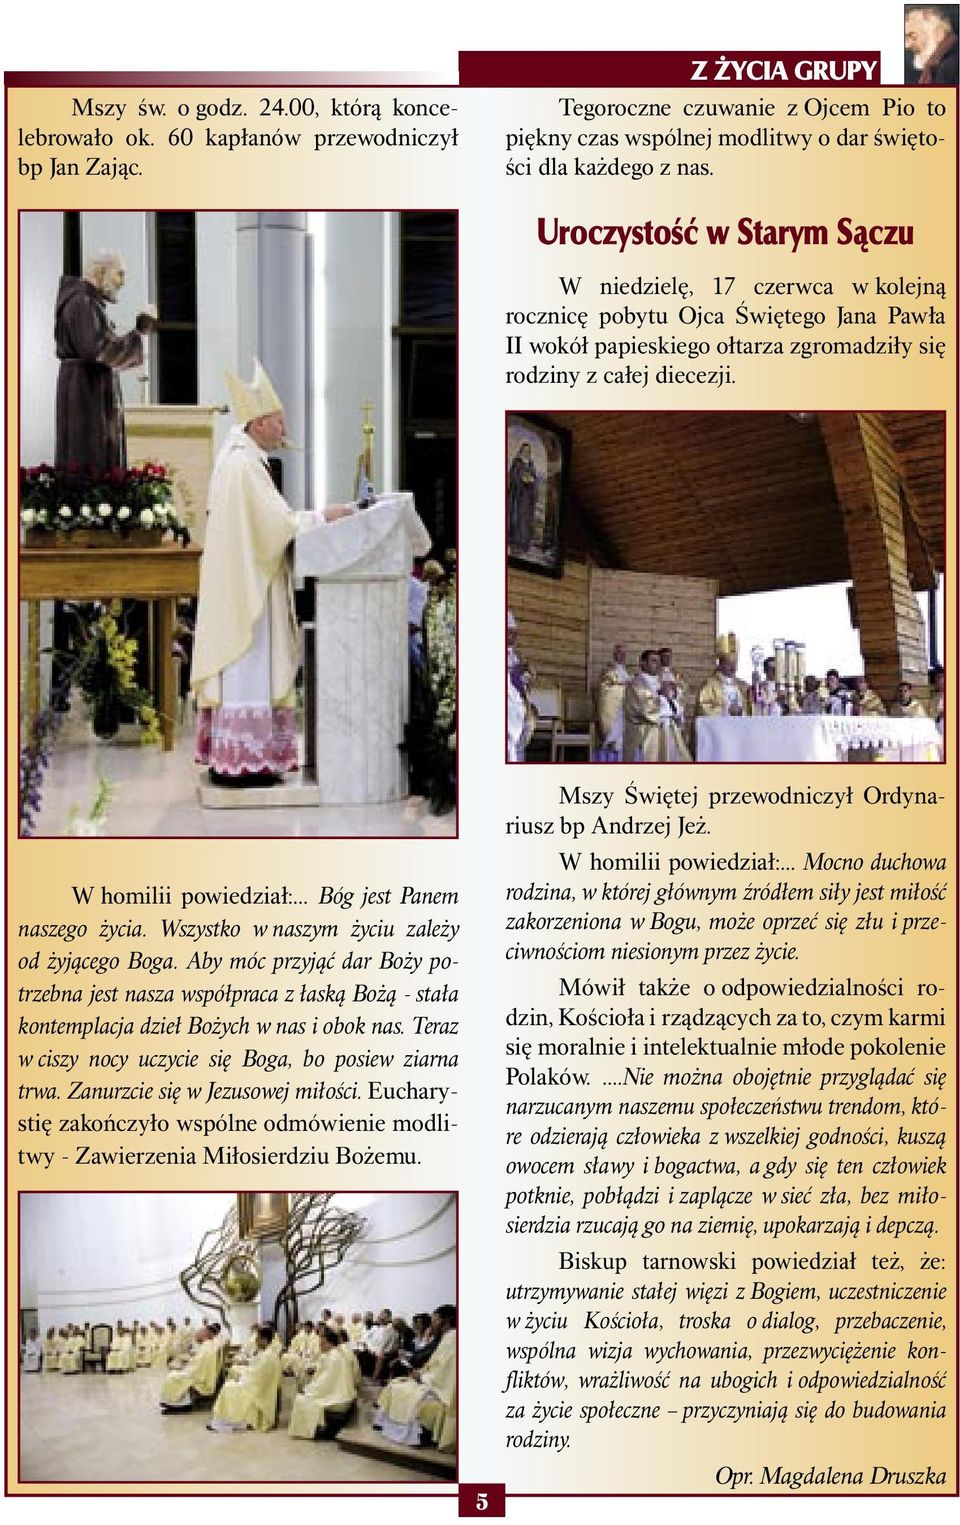 Uroczystość w Starym Sączu W niedzielę, 17 czerwca w kolejną rocznicę pobytu Ojca Świętego Jana Pawła II wokół papieskiego ołtarza zgromadziły się rodziny z całej diecezji. W homilii powiedział:.